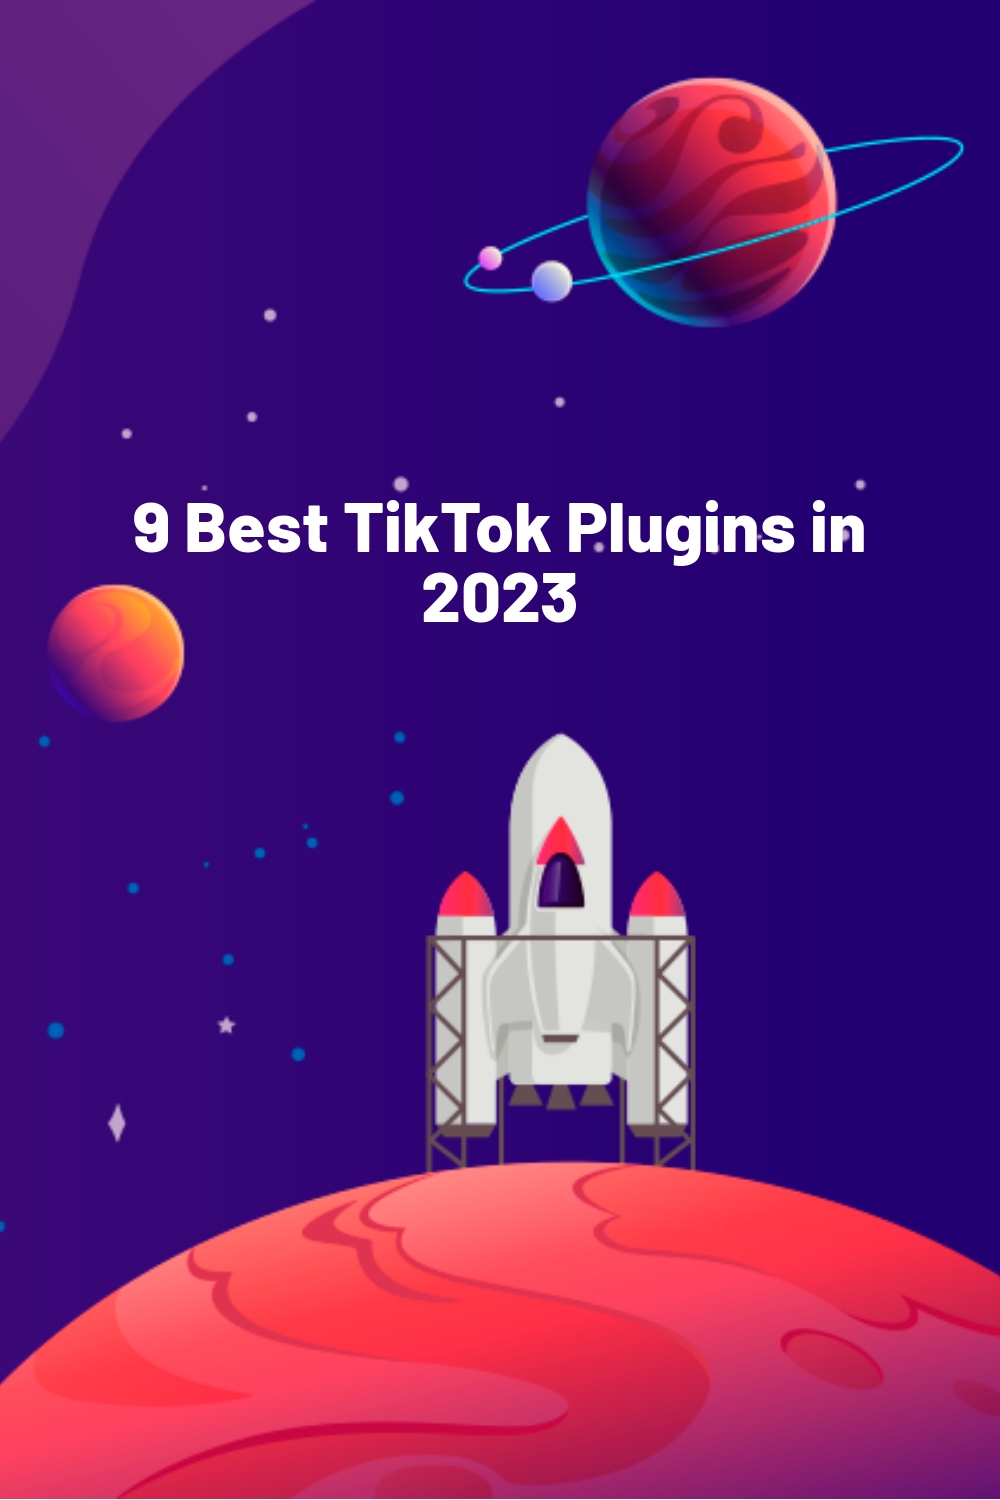 9 Best TikTok Plugins in 2023